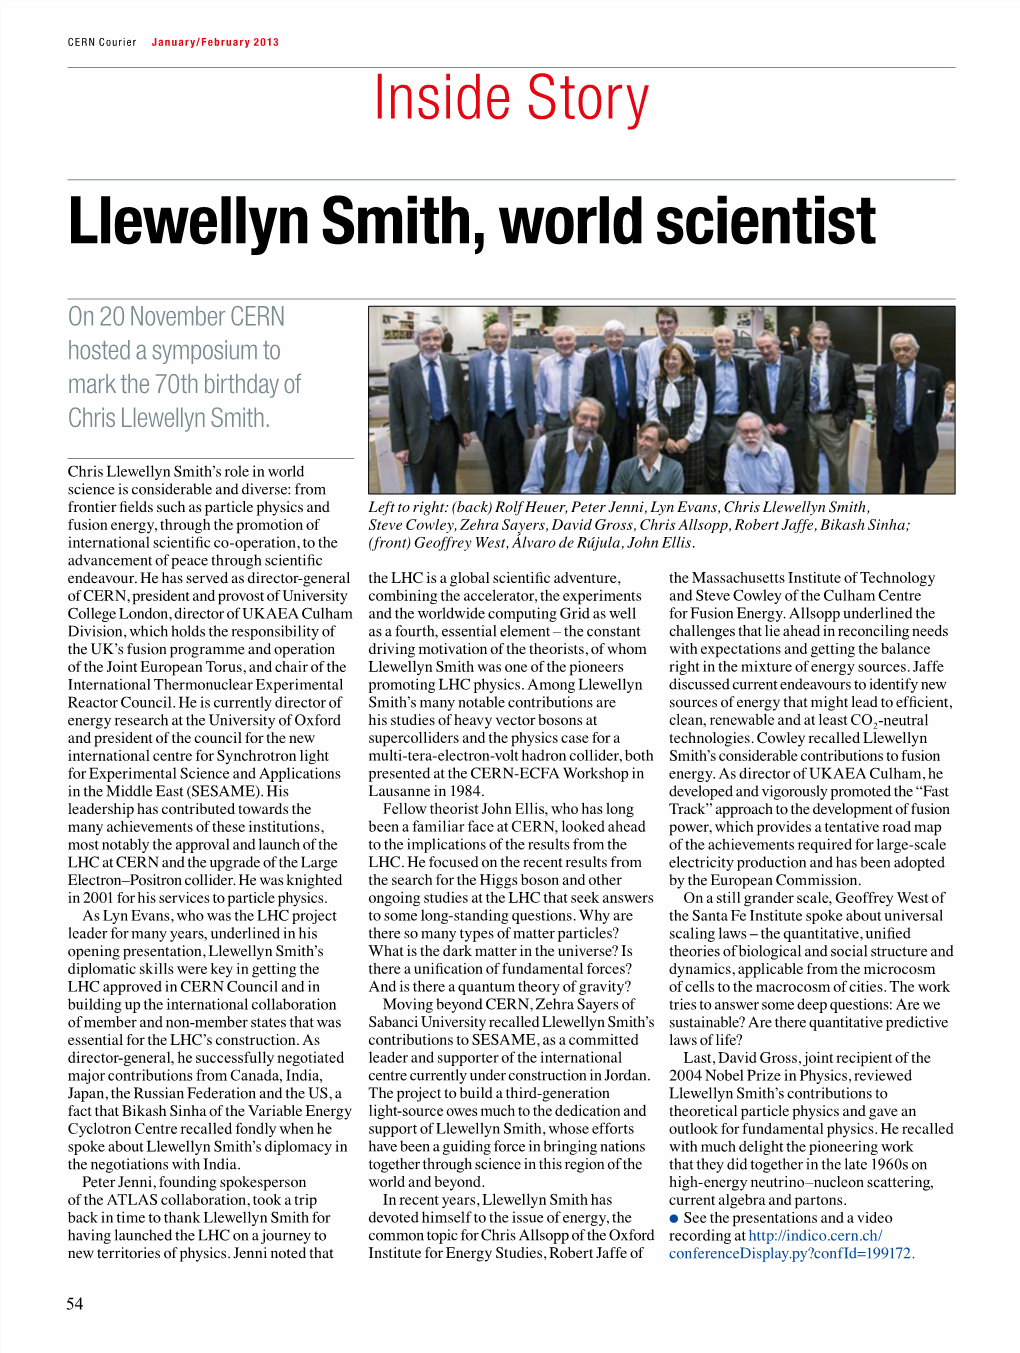 Llewellyn Smith, World Scientist